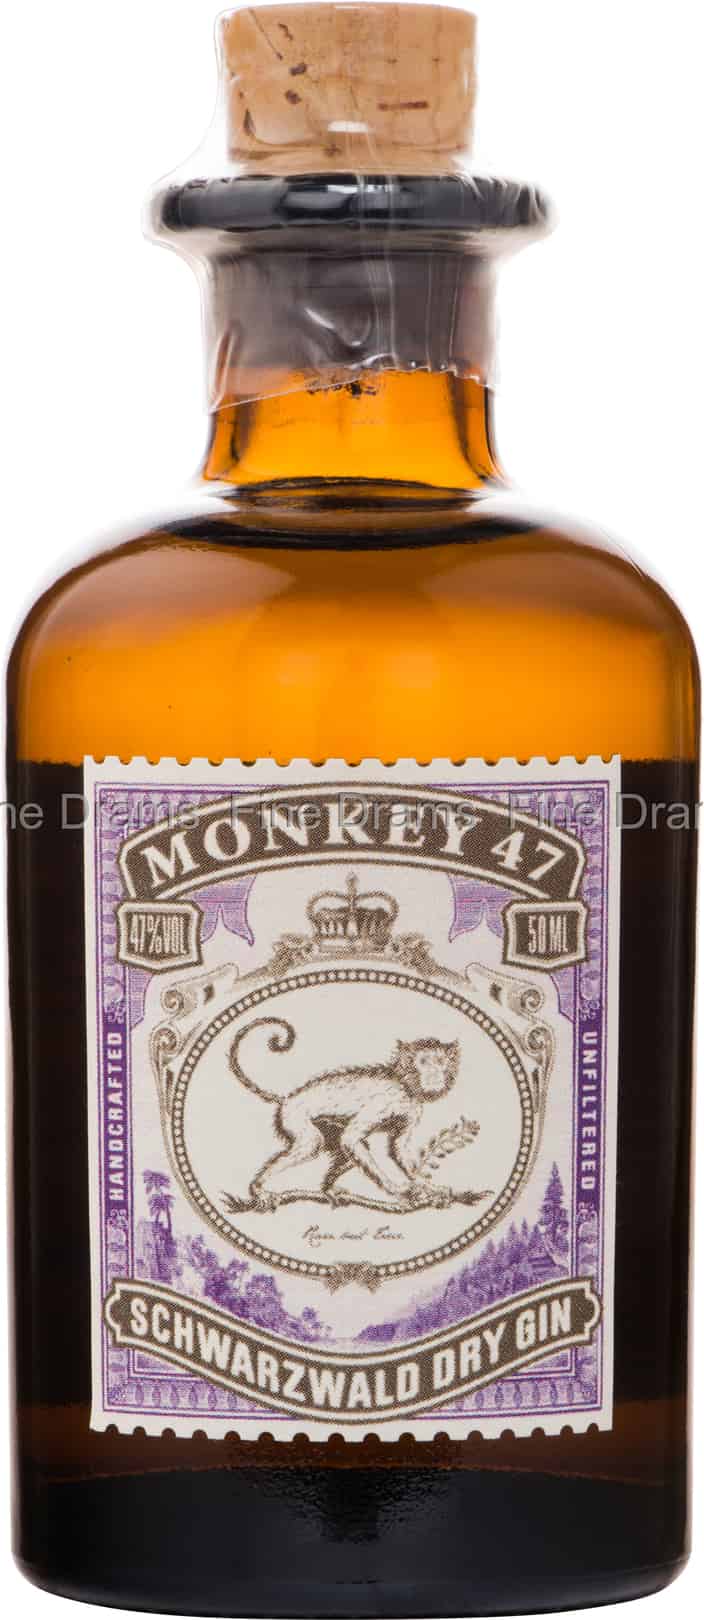 Monkey 47 Schwarzwald Dry Gin Miniature 5 cl, 47%